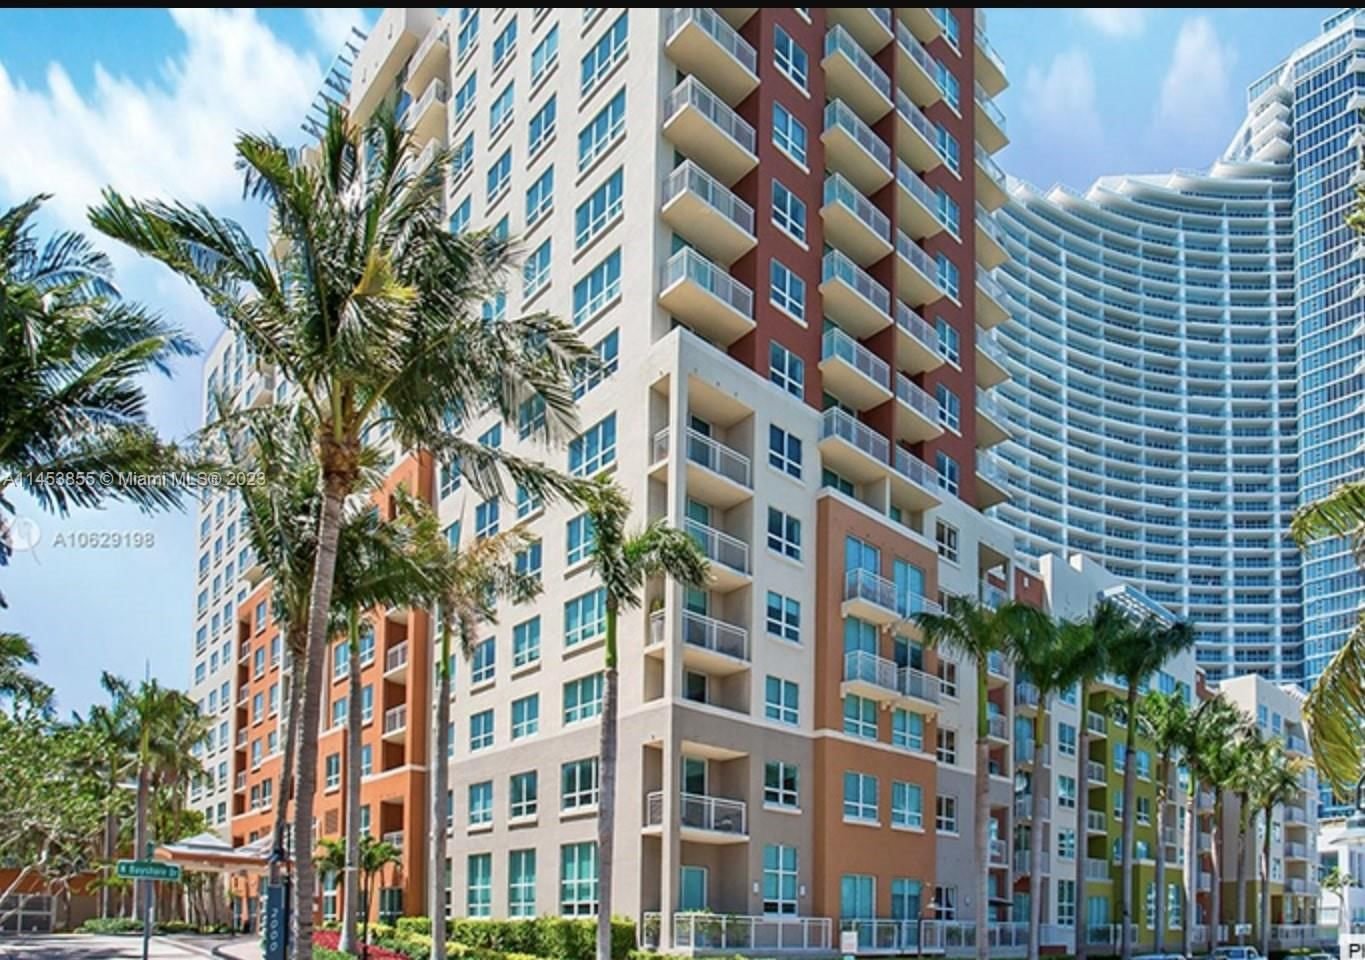 Real estate property located at 2000 Bayshore Dr #1505, Miami-Dade County, CITE CONDO, Miami, FL